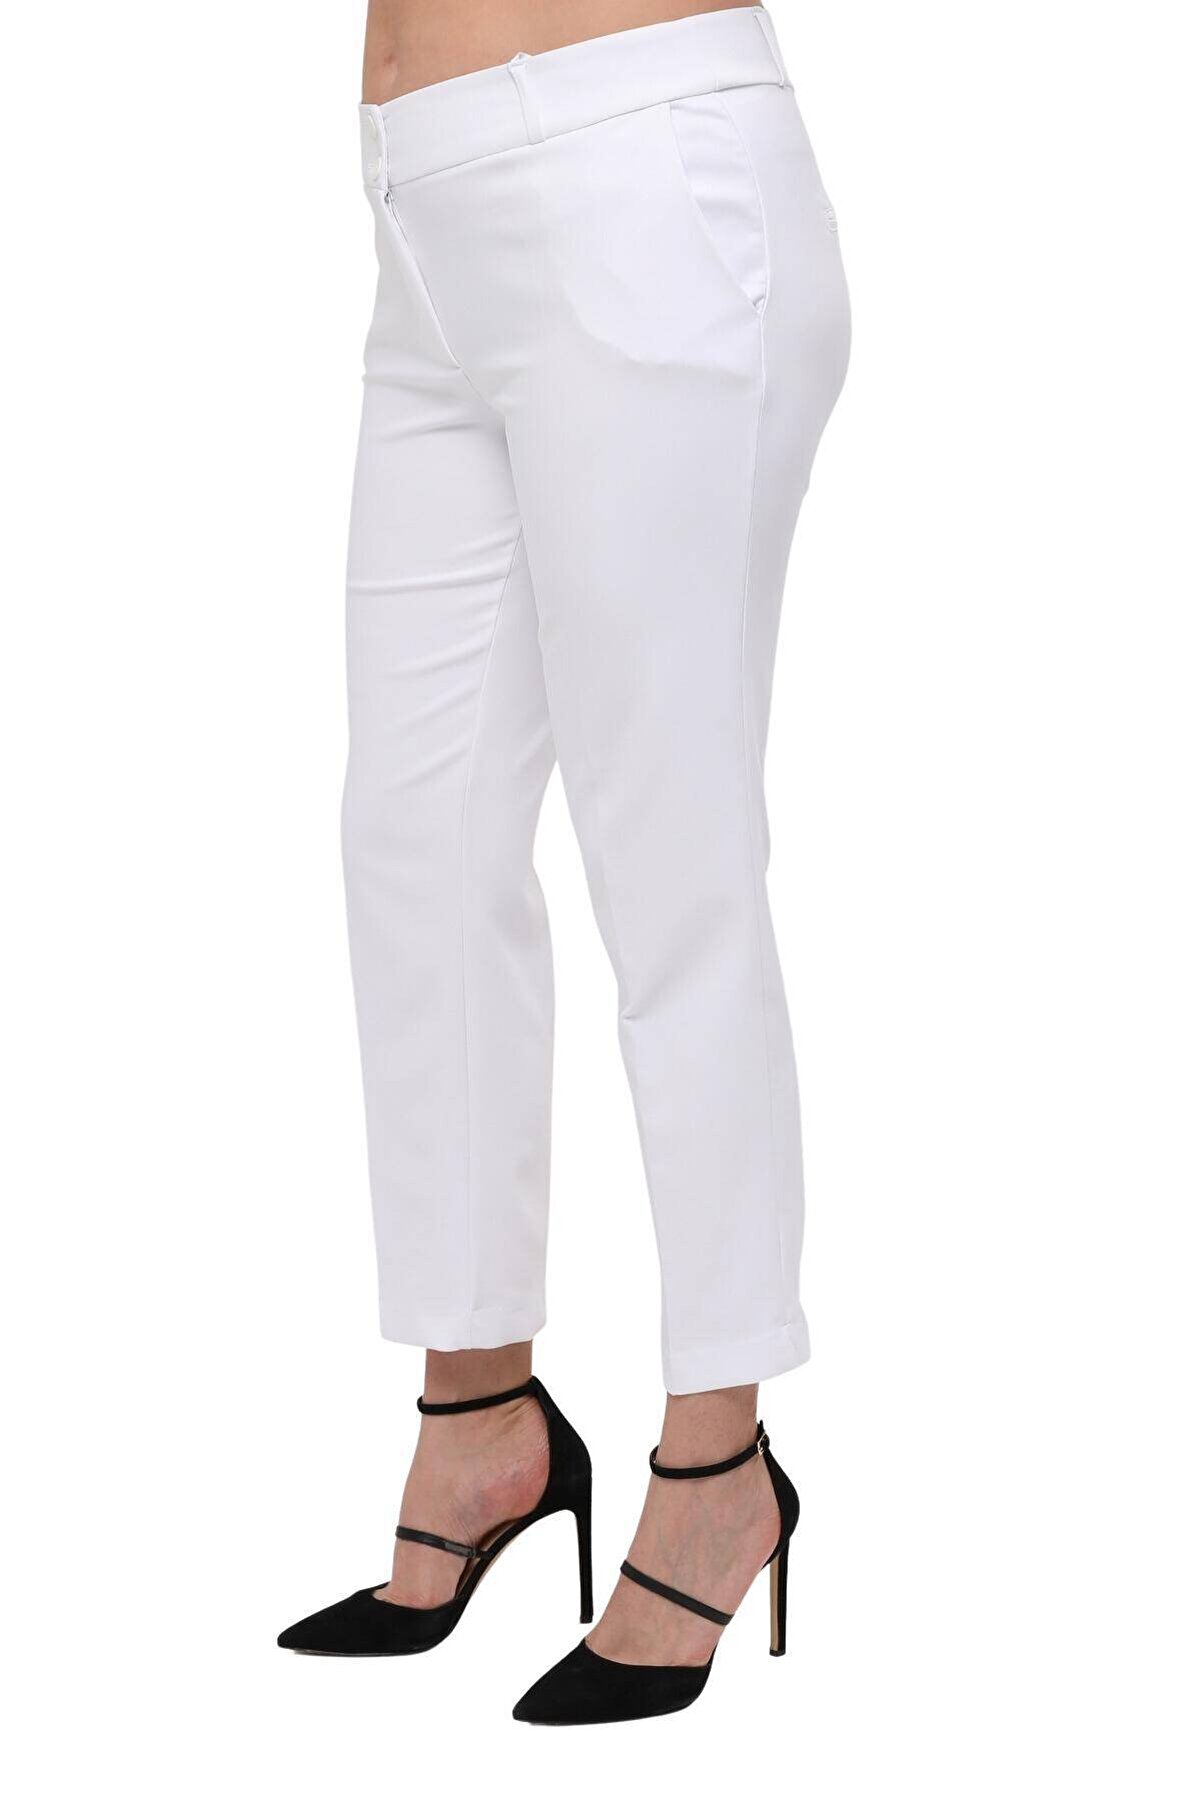 Hanezza Kadın Büyük Beden Beyaz Bilek Boy Yüksek Bel 42-56 Likralı Pantolon